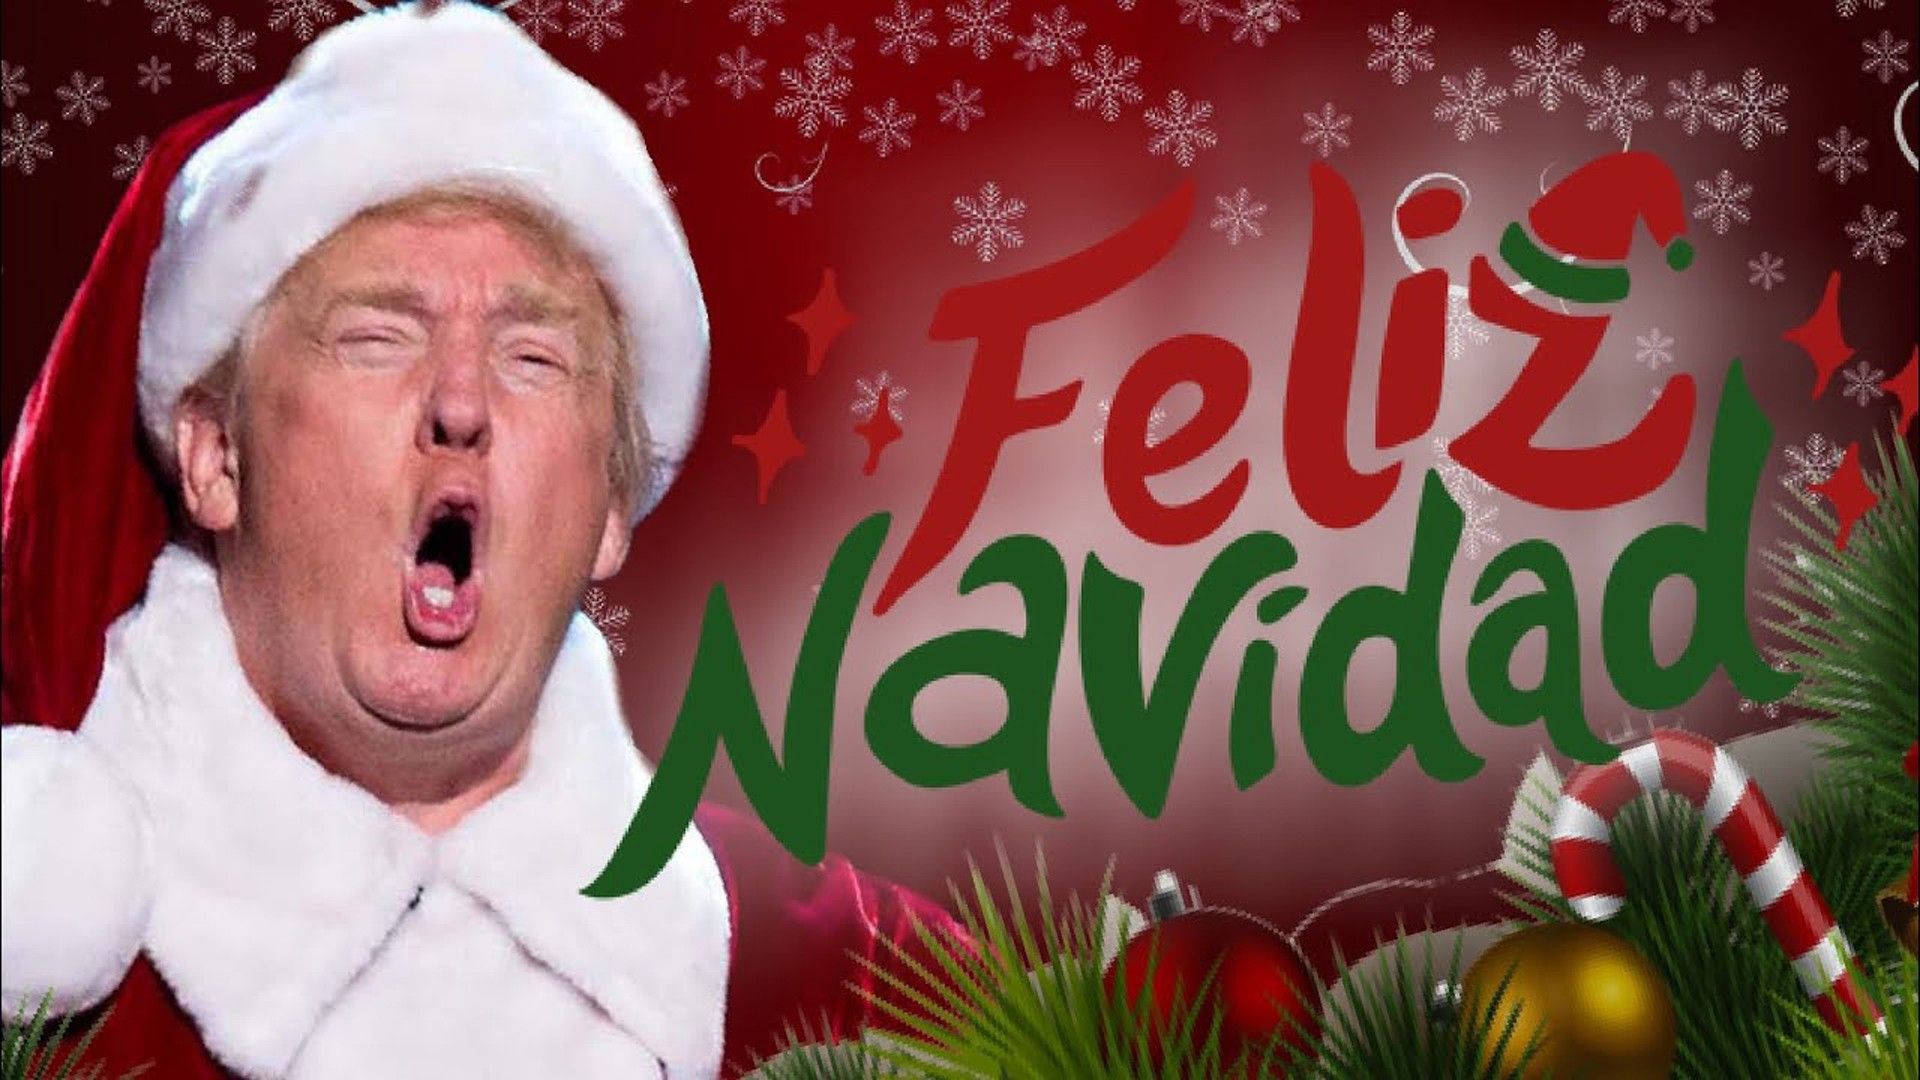 Donald Trump HD Feliz NaviDAD Wallpaper